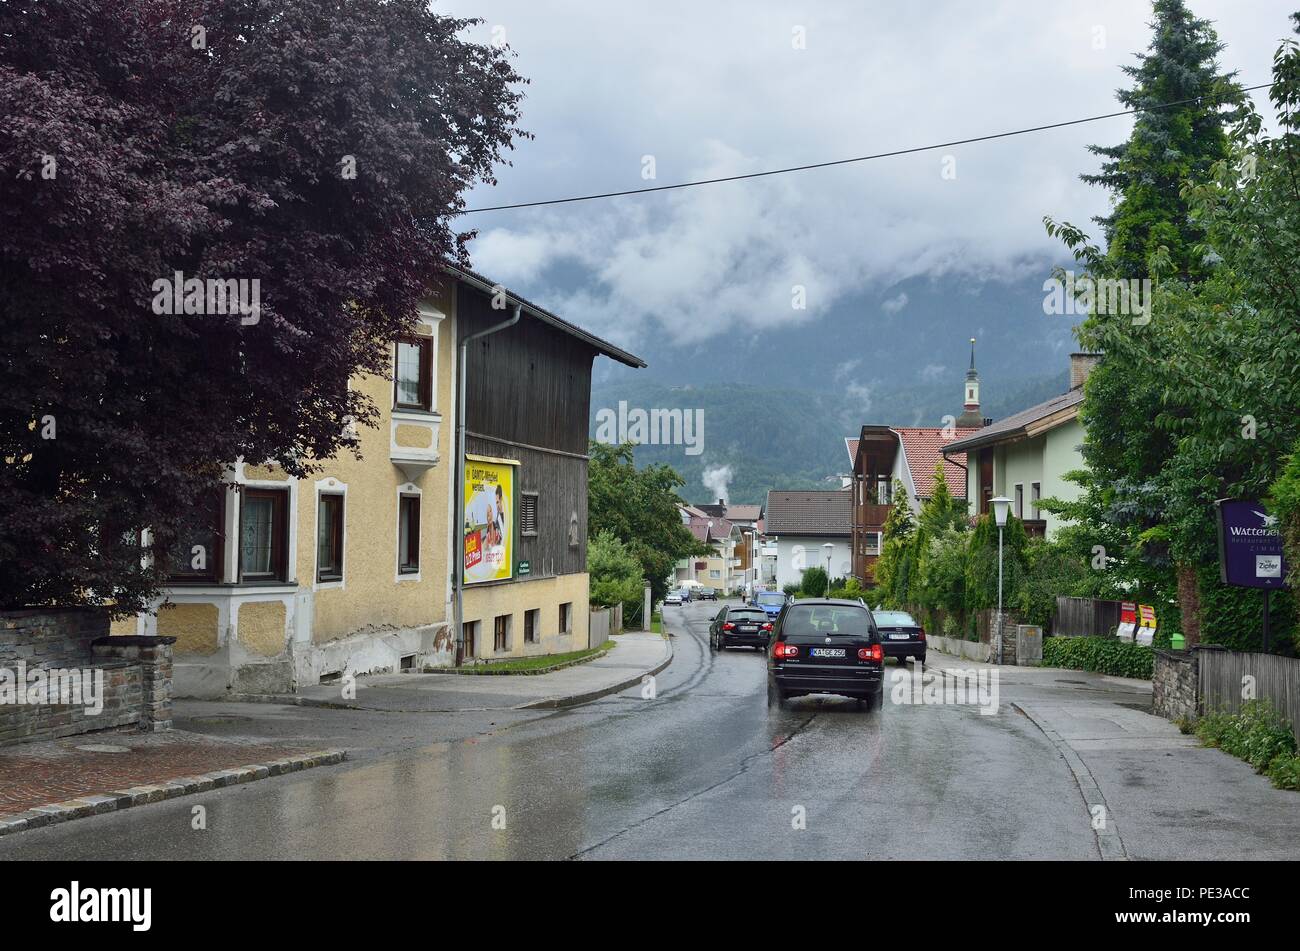 Una scena tipica di case su entrambi i lati di una strada stretta con le automobili che si plying sopra. Alpi catene montuose sullo sfondo, Wattens, Austria, Europa Foto Stock